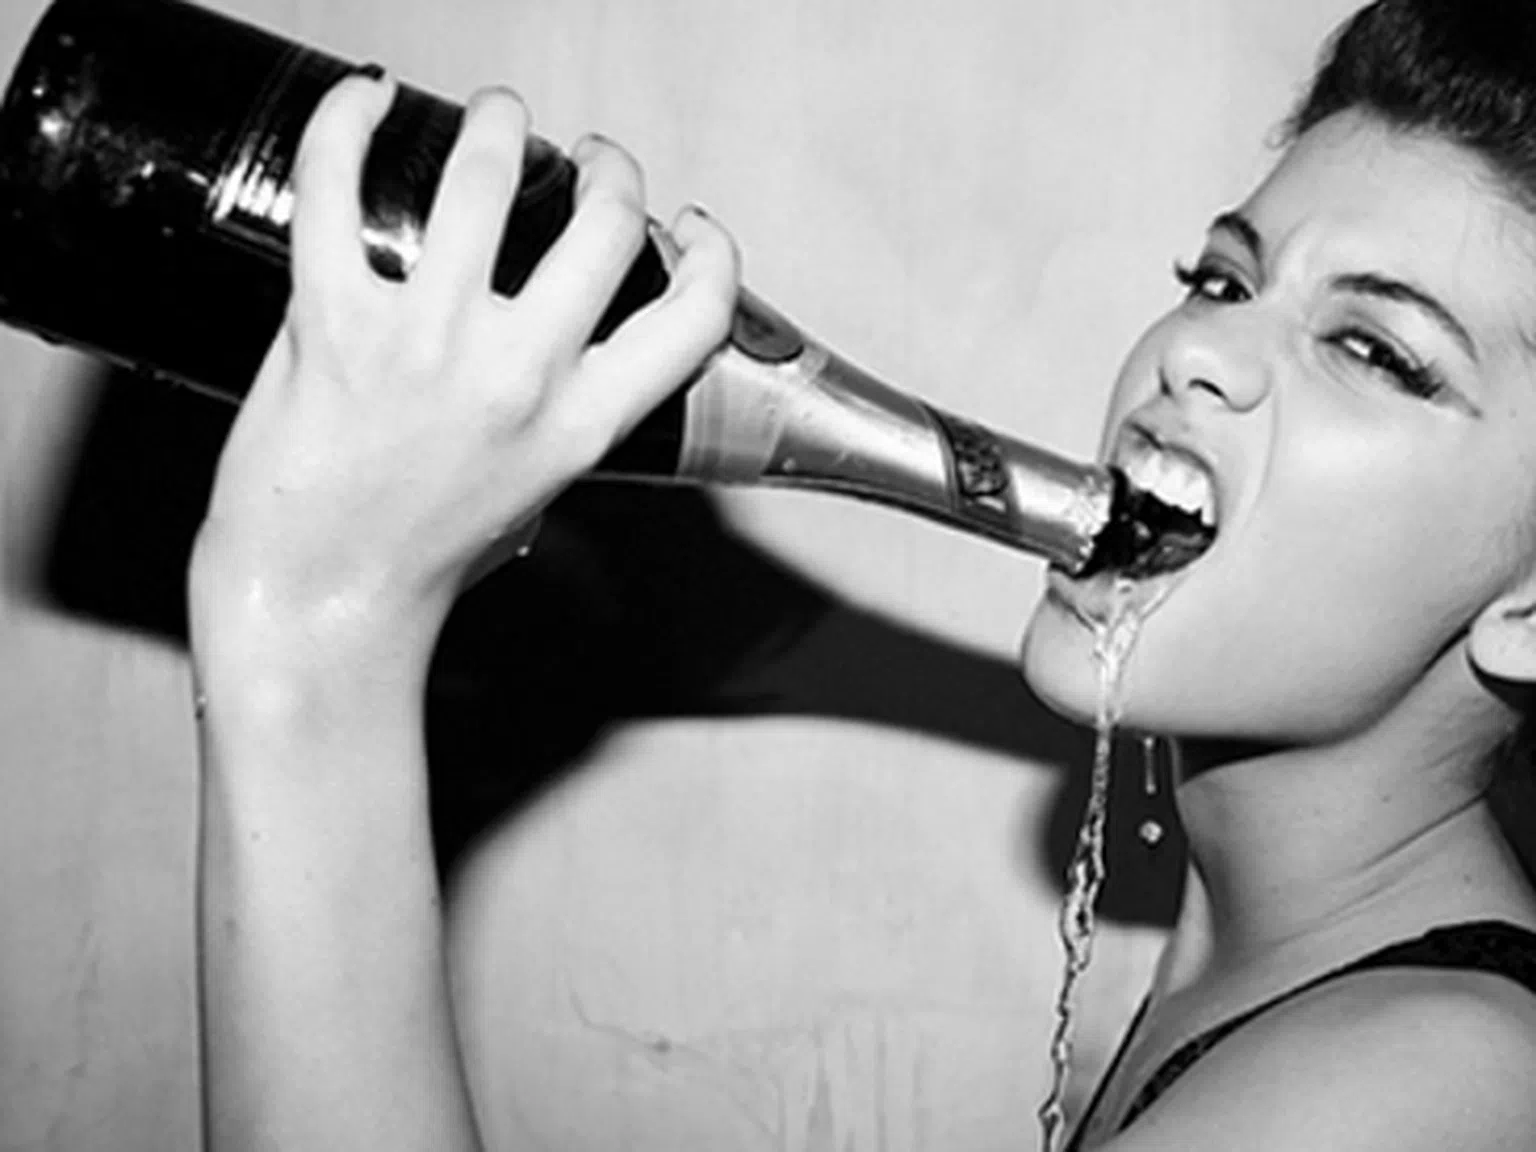 Жените пият повече след брака